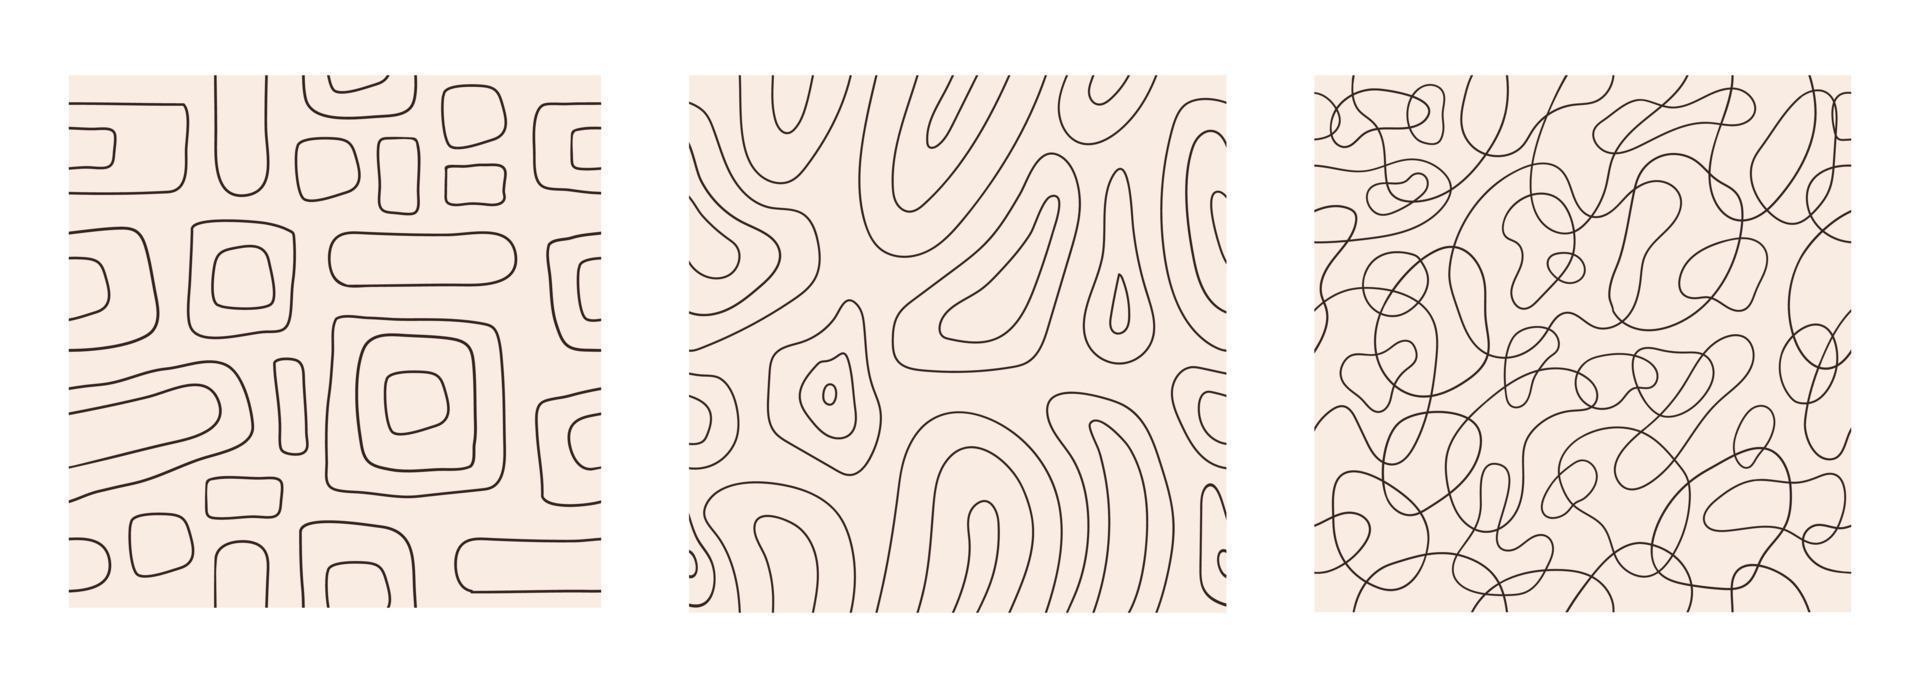 ensemble élégant motif abstrait sans couture avec des lignes enchevêtrées géométriques brunes sur fond pastel. conception de griffonnage de vecteur